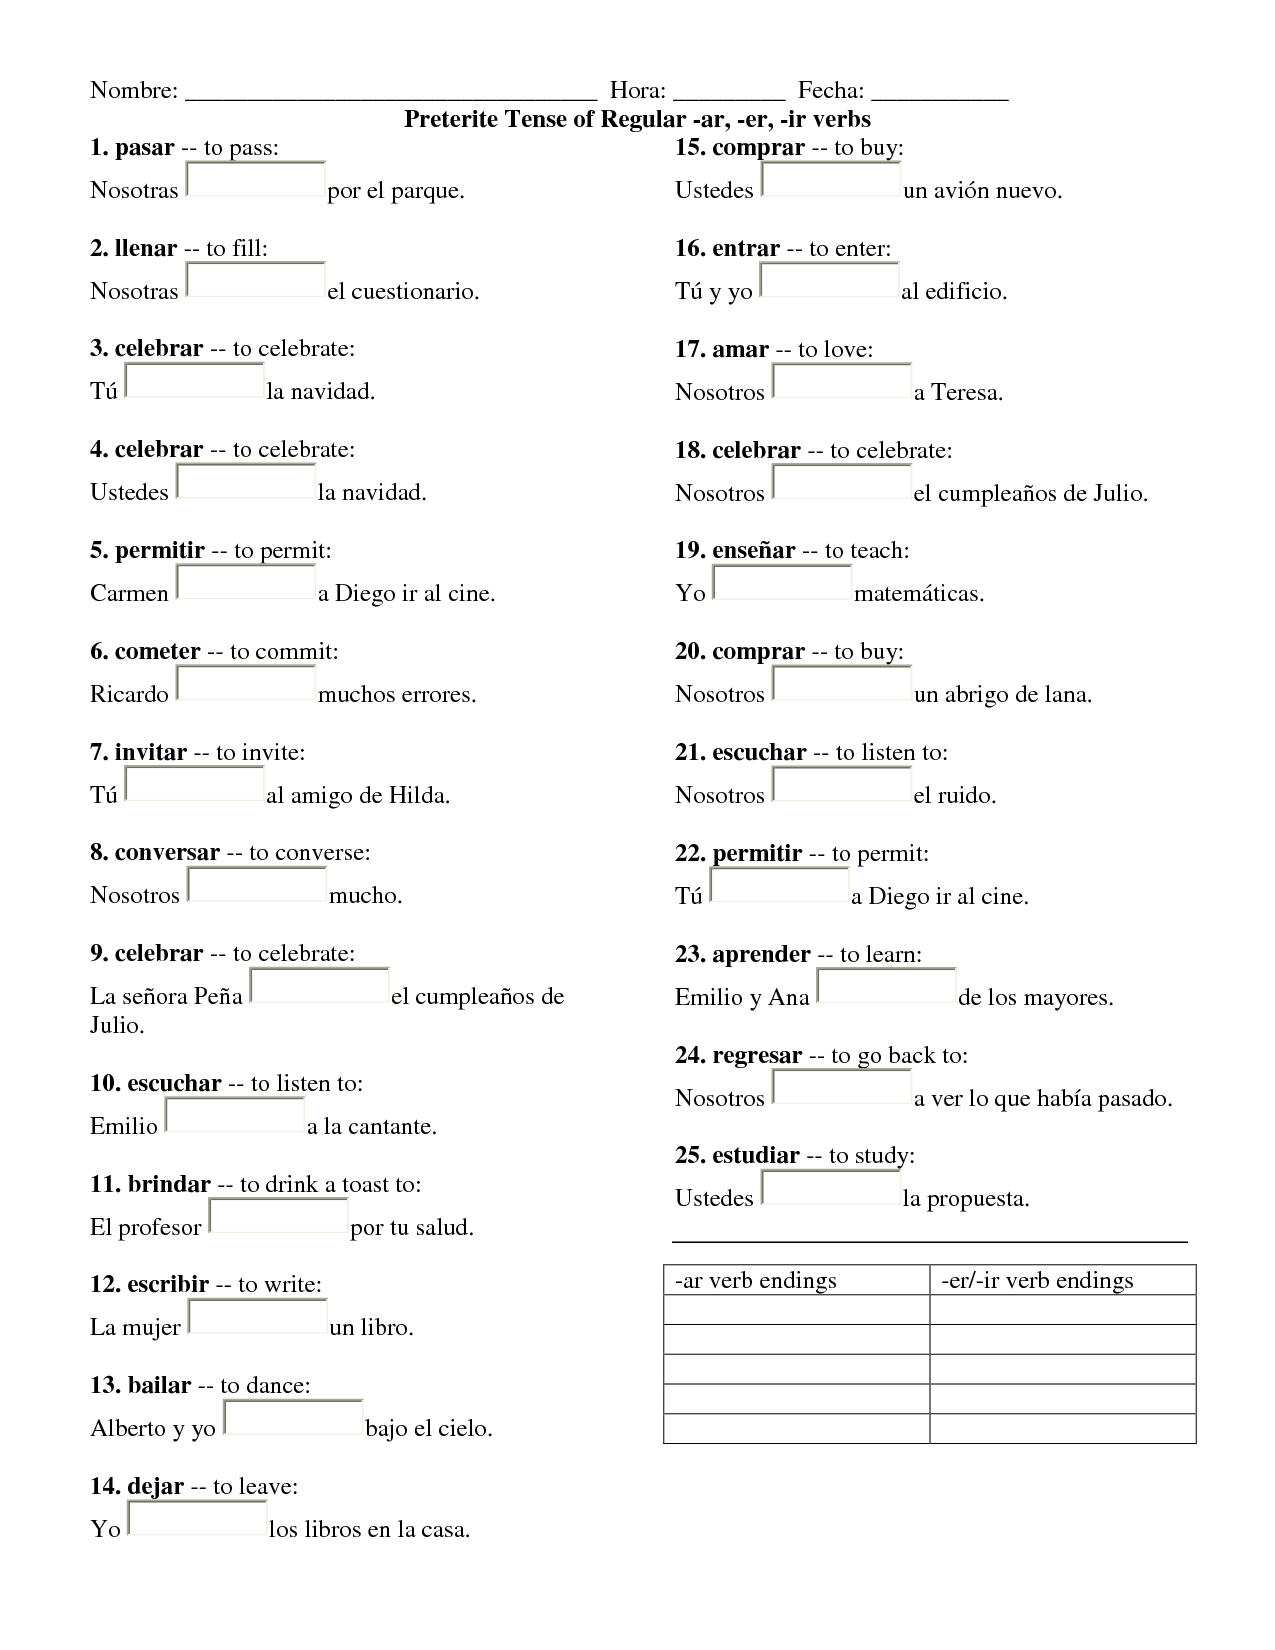 16-preterite-spanish-verbs-worksheets-worksheeto